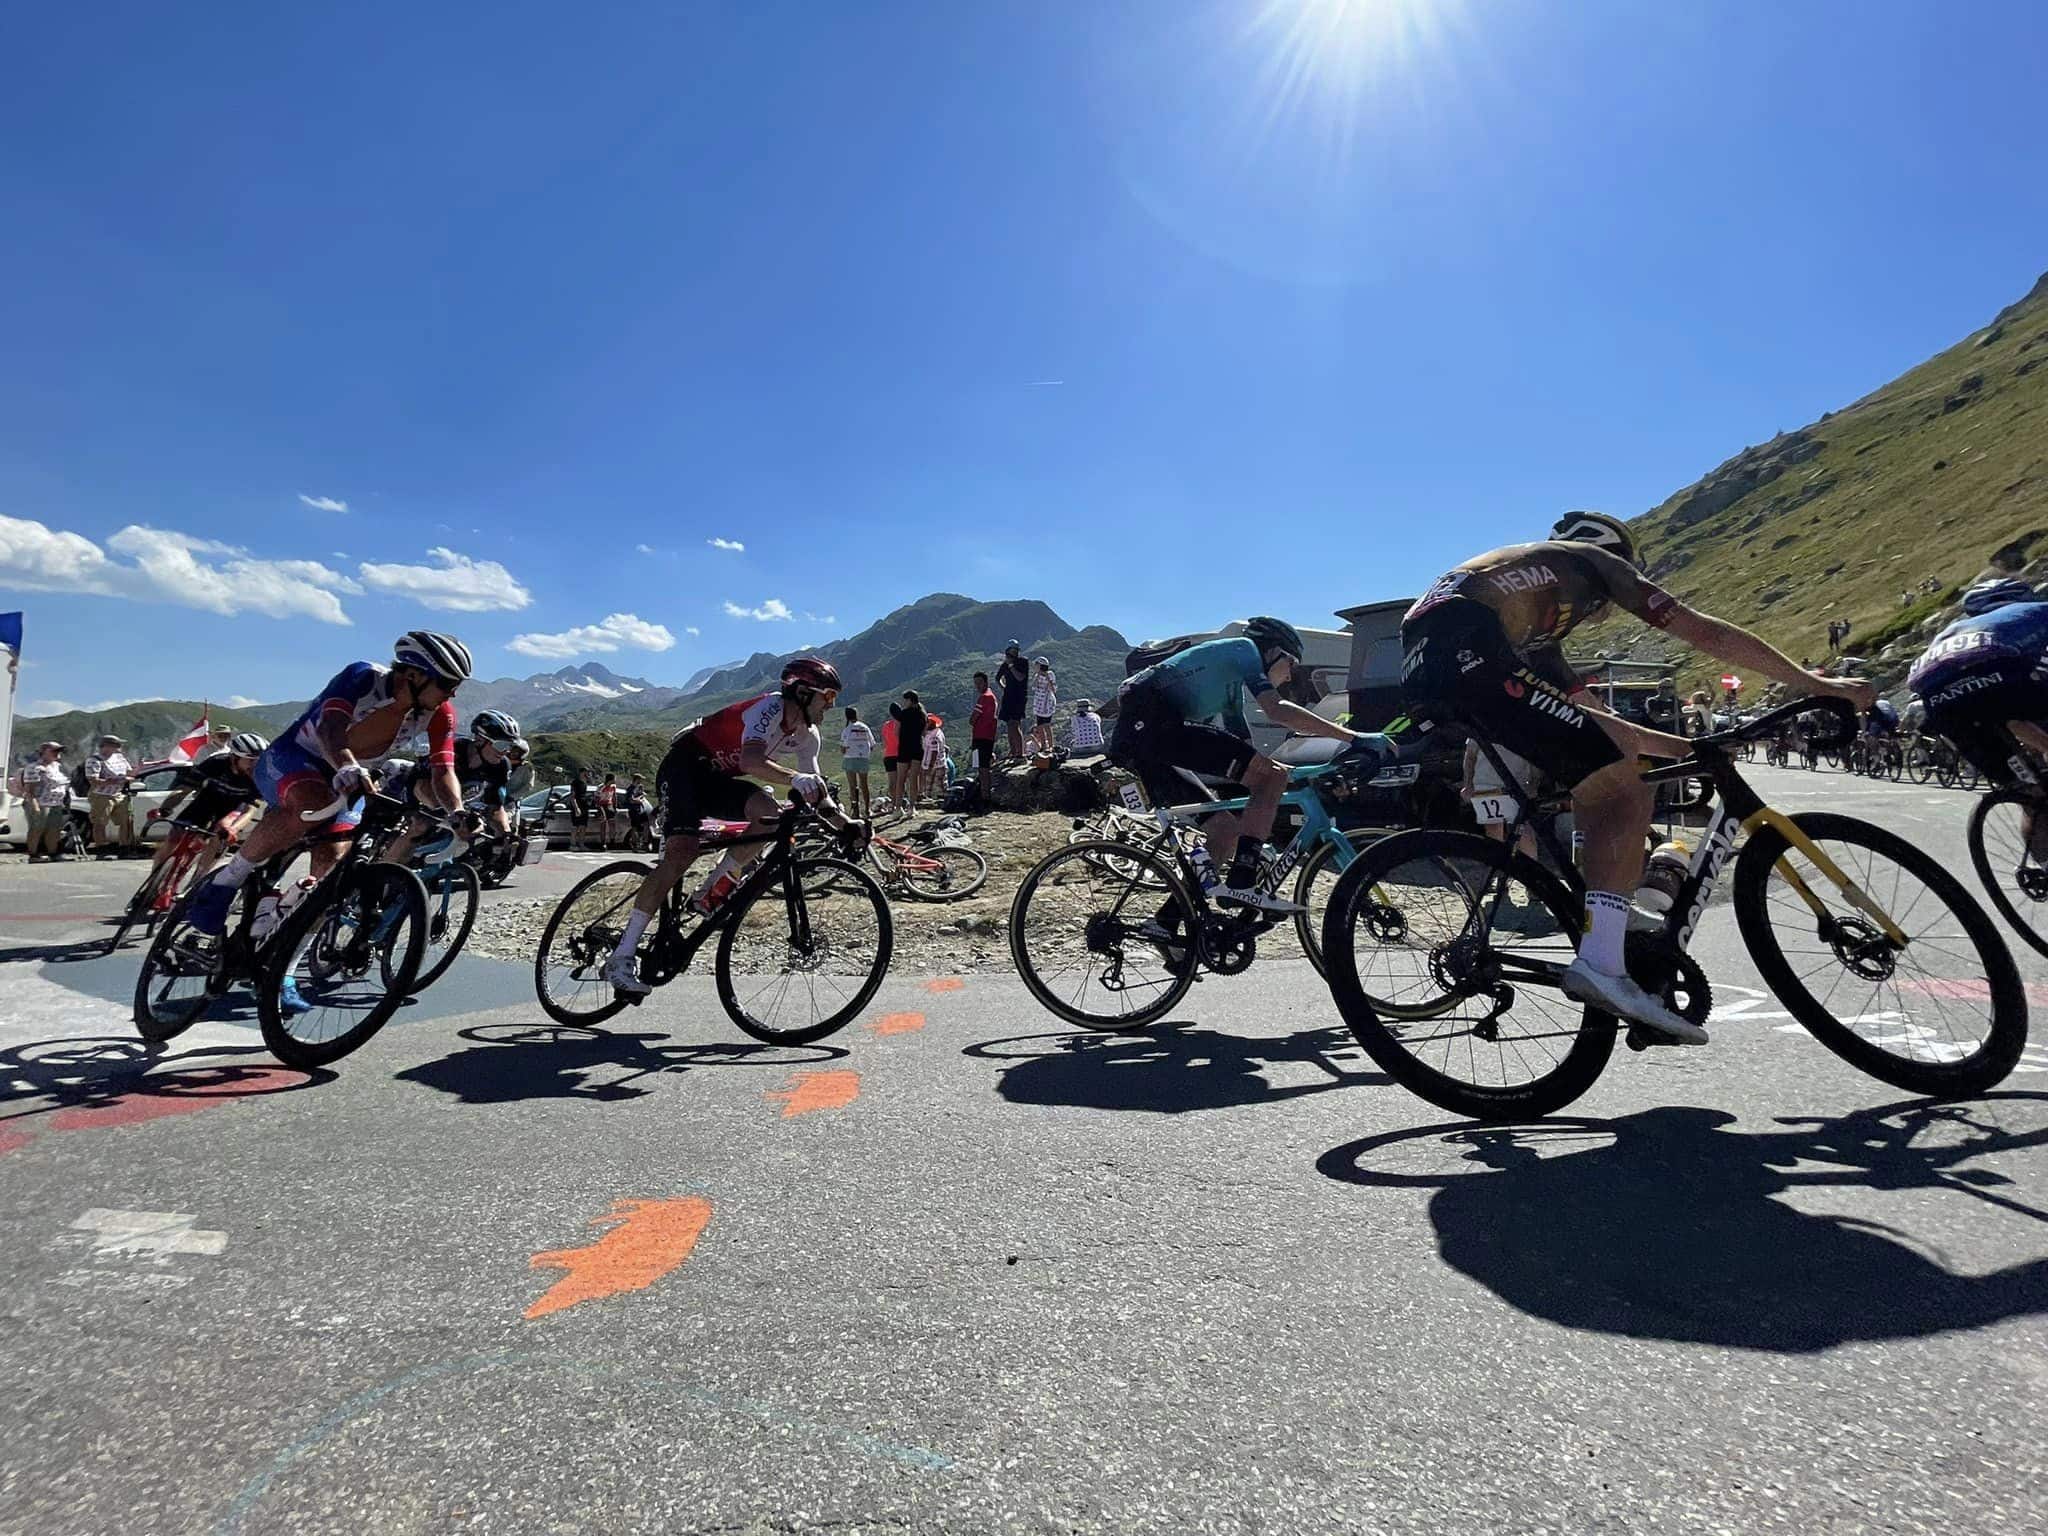 Photo en format paysage, prise de jour. La photo a été prise lors de l'étape du Tour de France 2015 à La Toussuire. Nous pouvons y voir les coureurs en pleine ascension dans un virage.